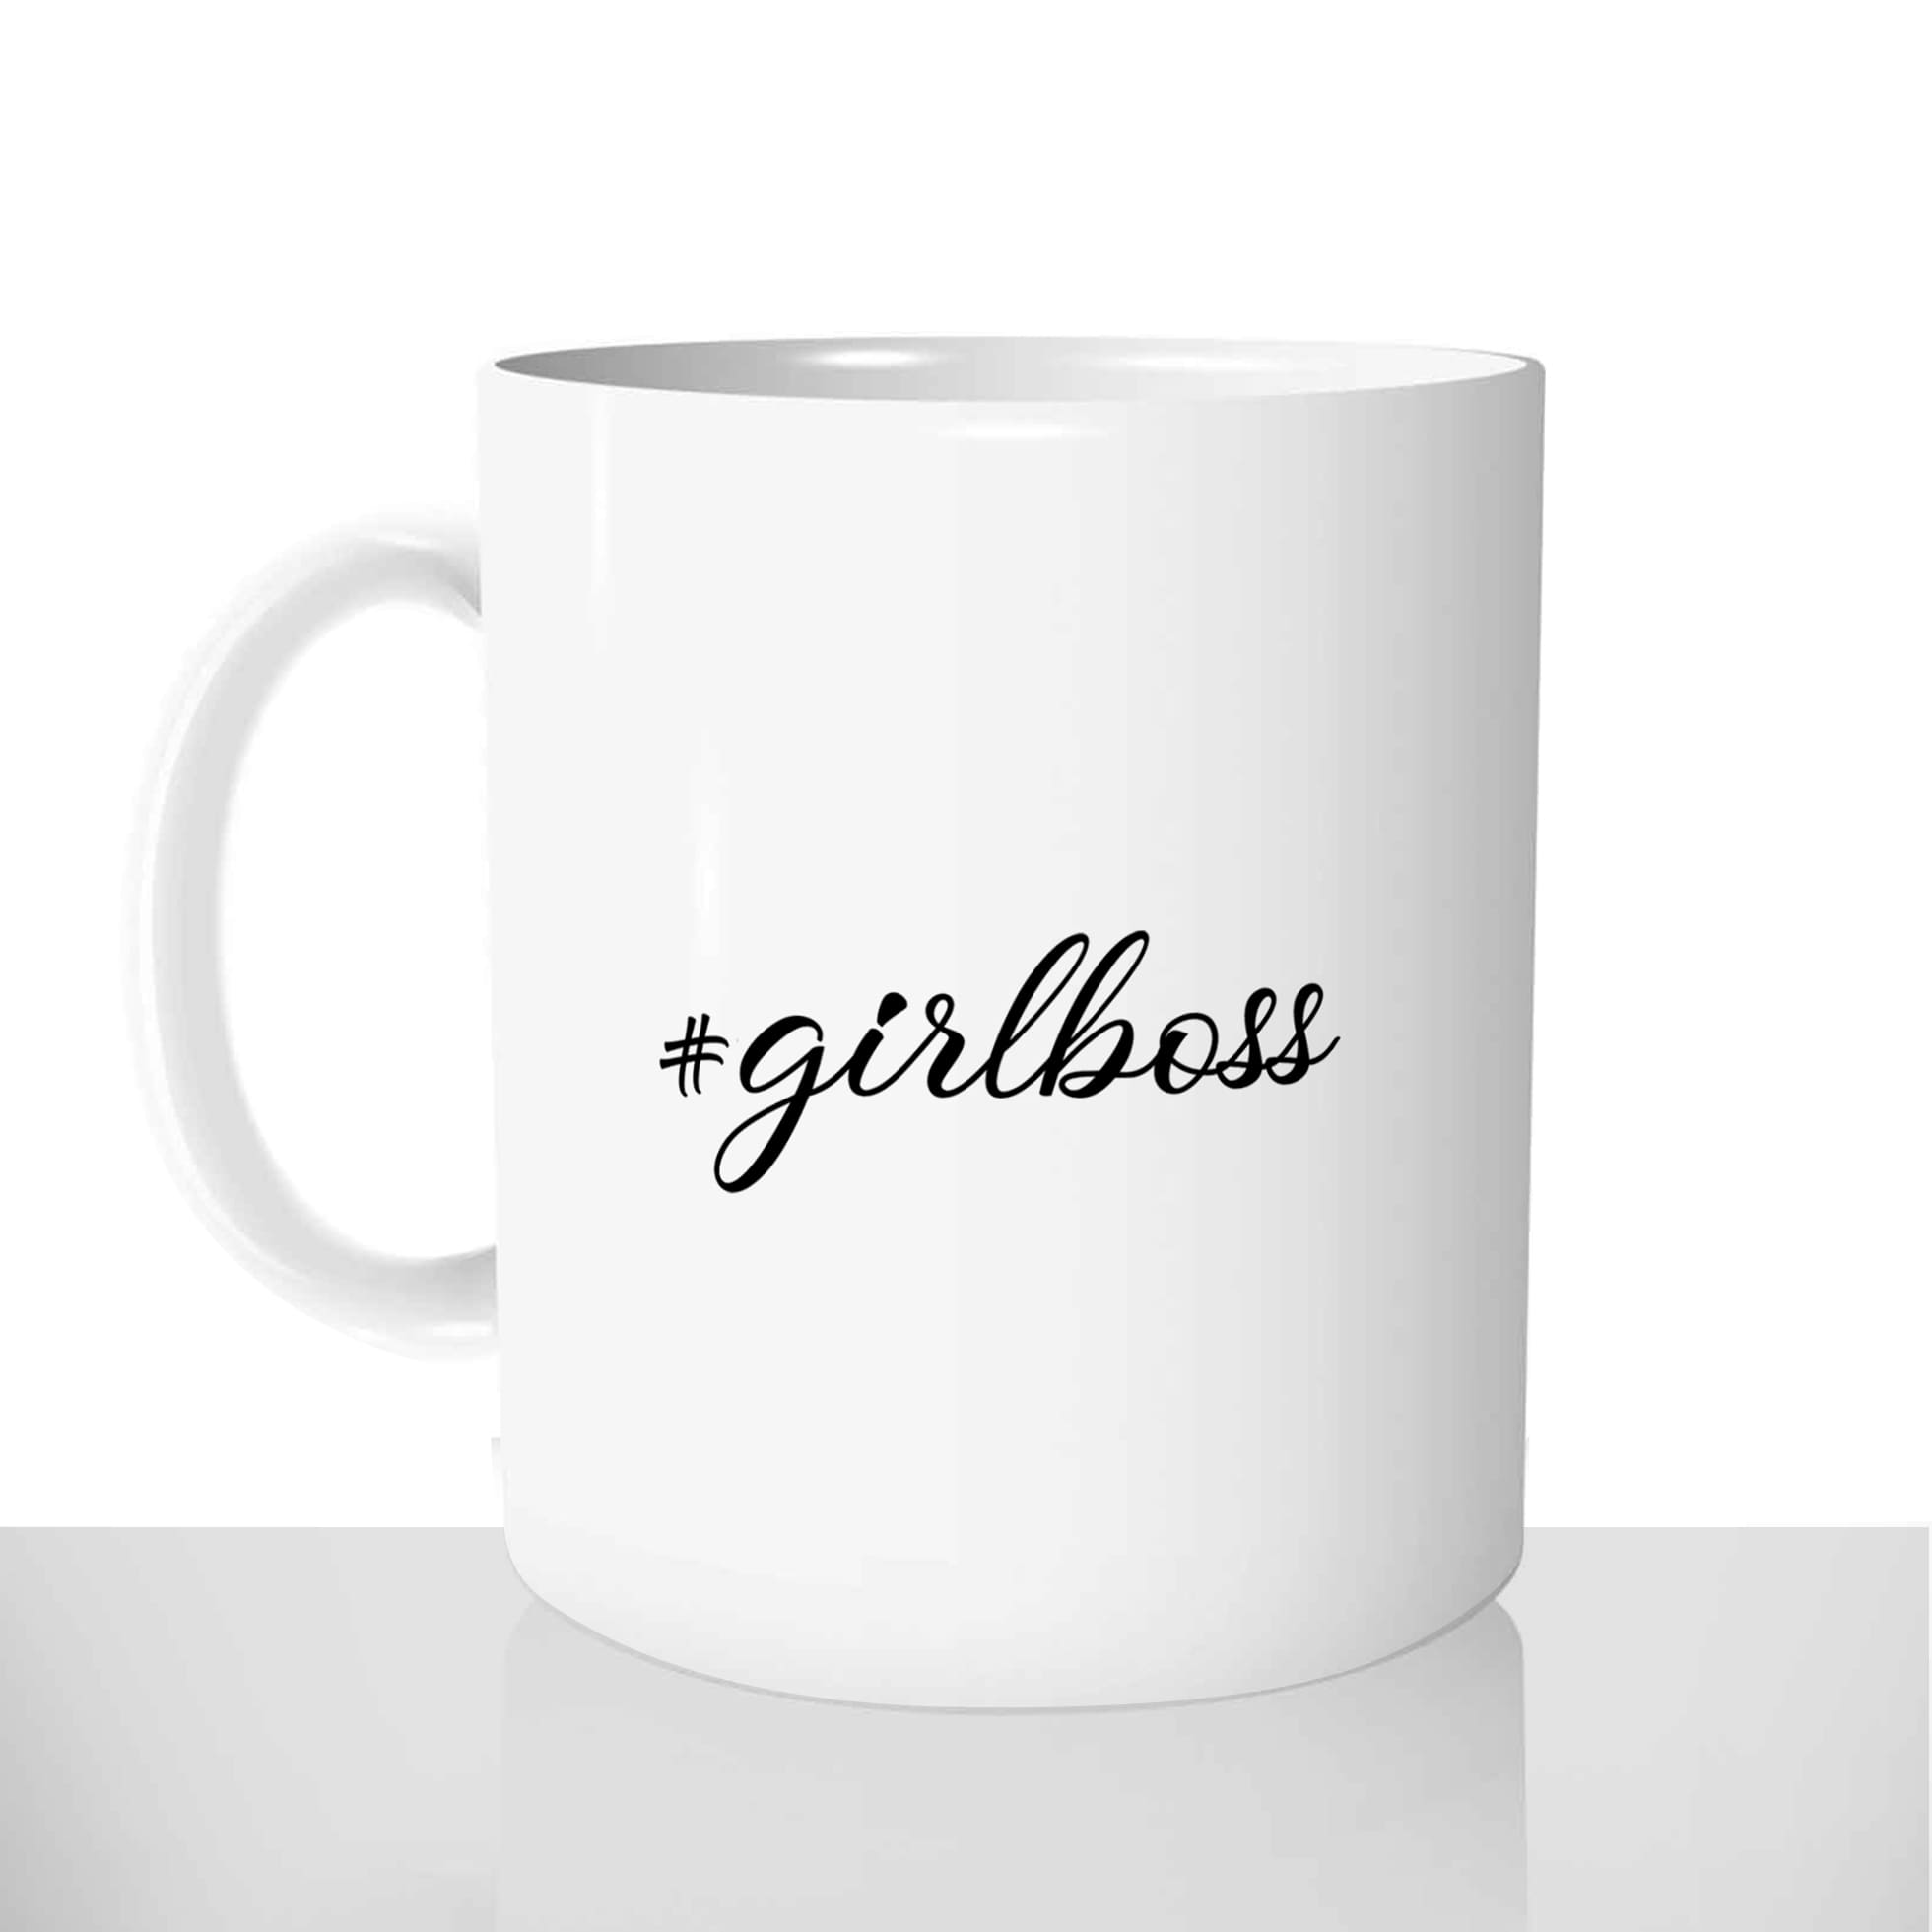 mug classique en céramique 11oz personnalisé personnalisable photo girl boss patronne collegue copine femme caractère offrir cadeau chou